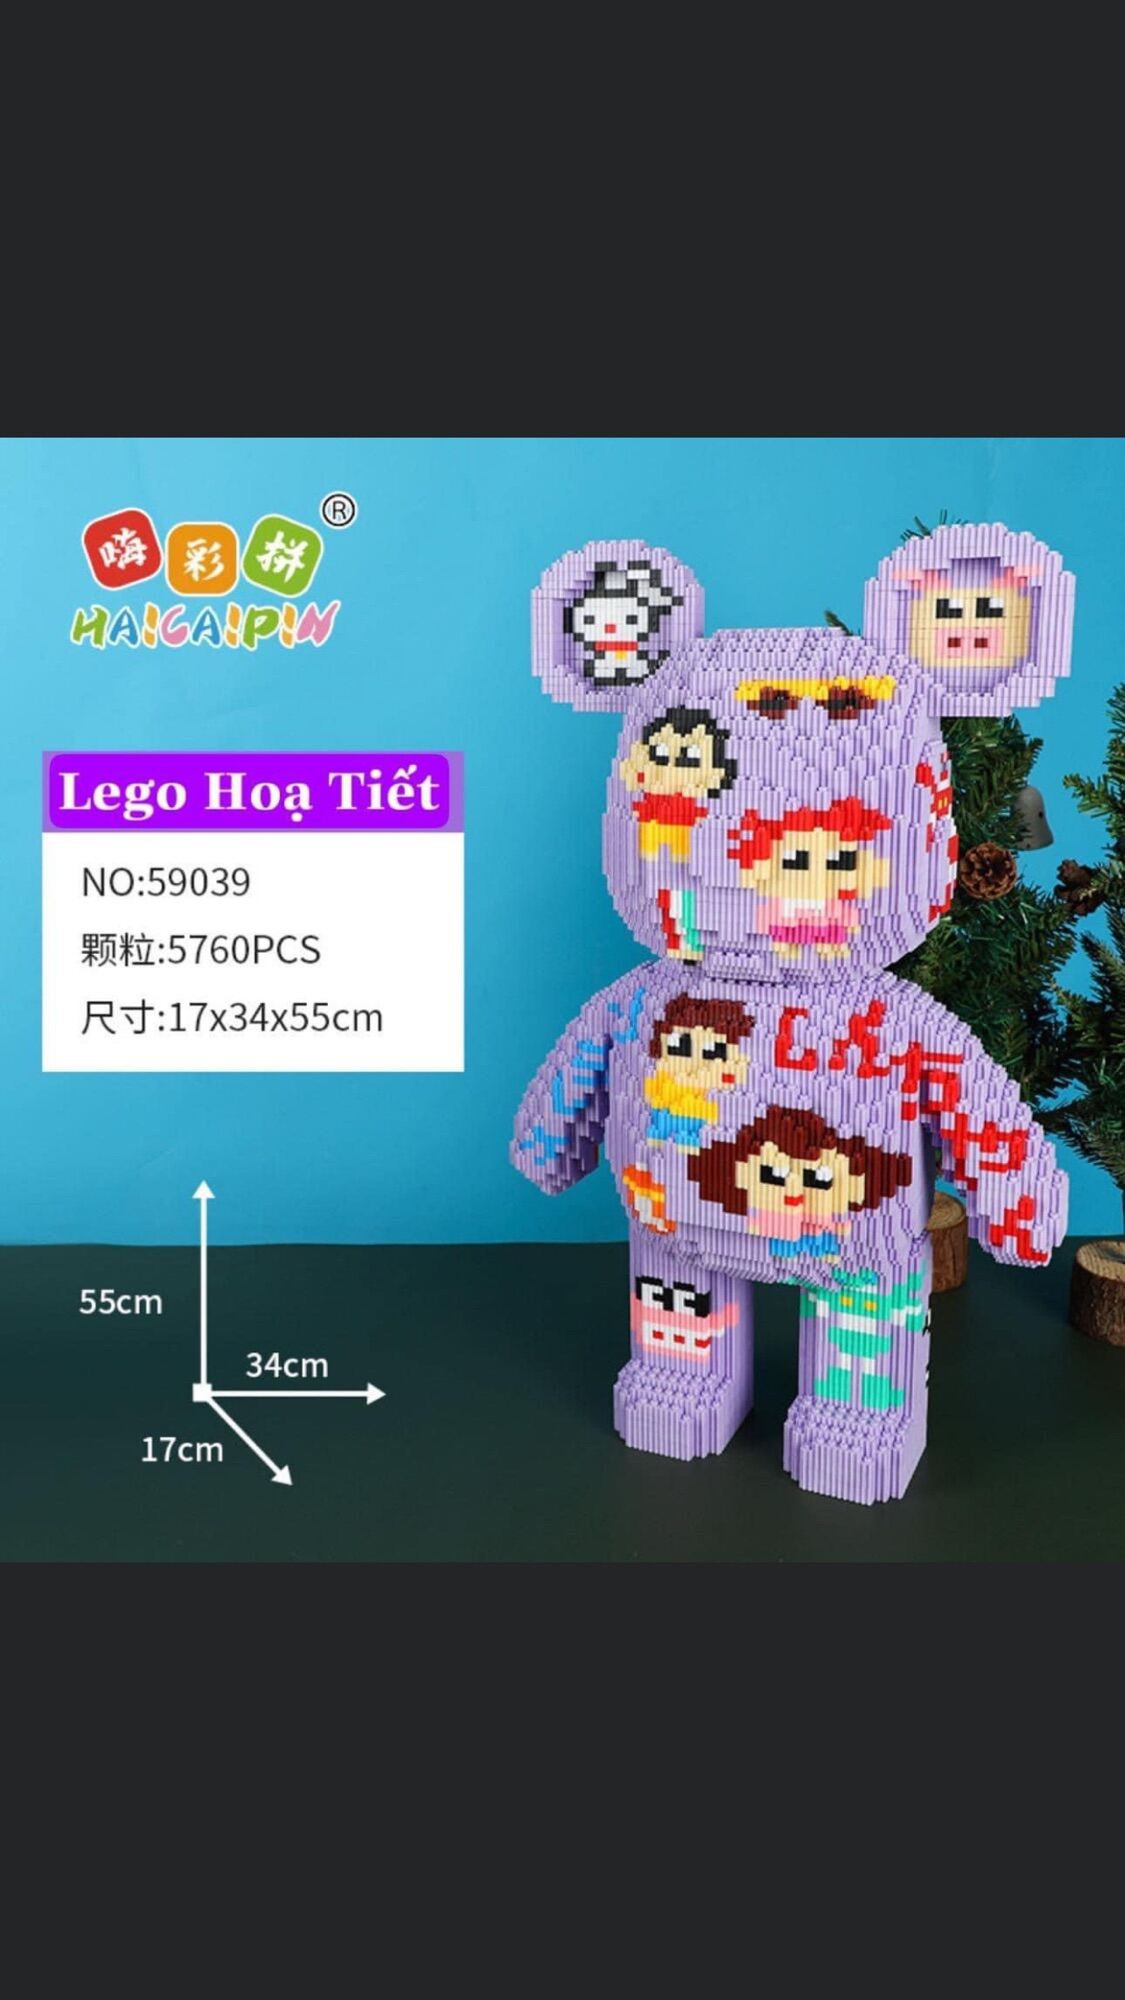 LeGo gấu bearbrick size 55cm tặng búa 🔨 tặng 1 lego mini khách lựa mẫu nt shop gui